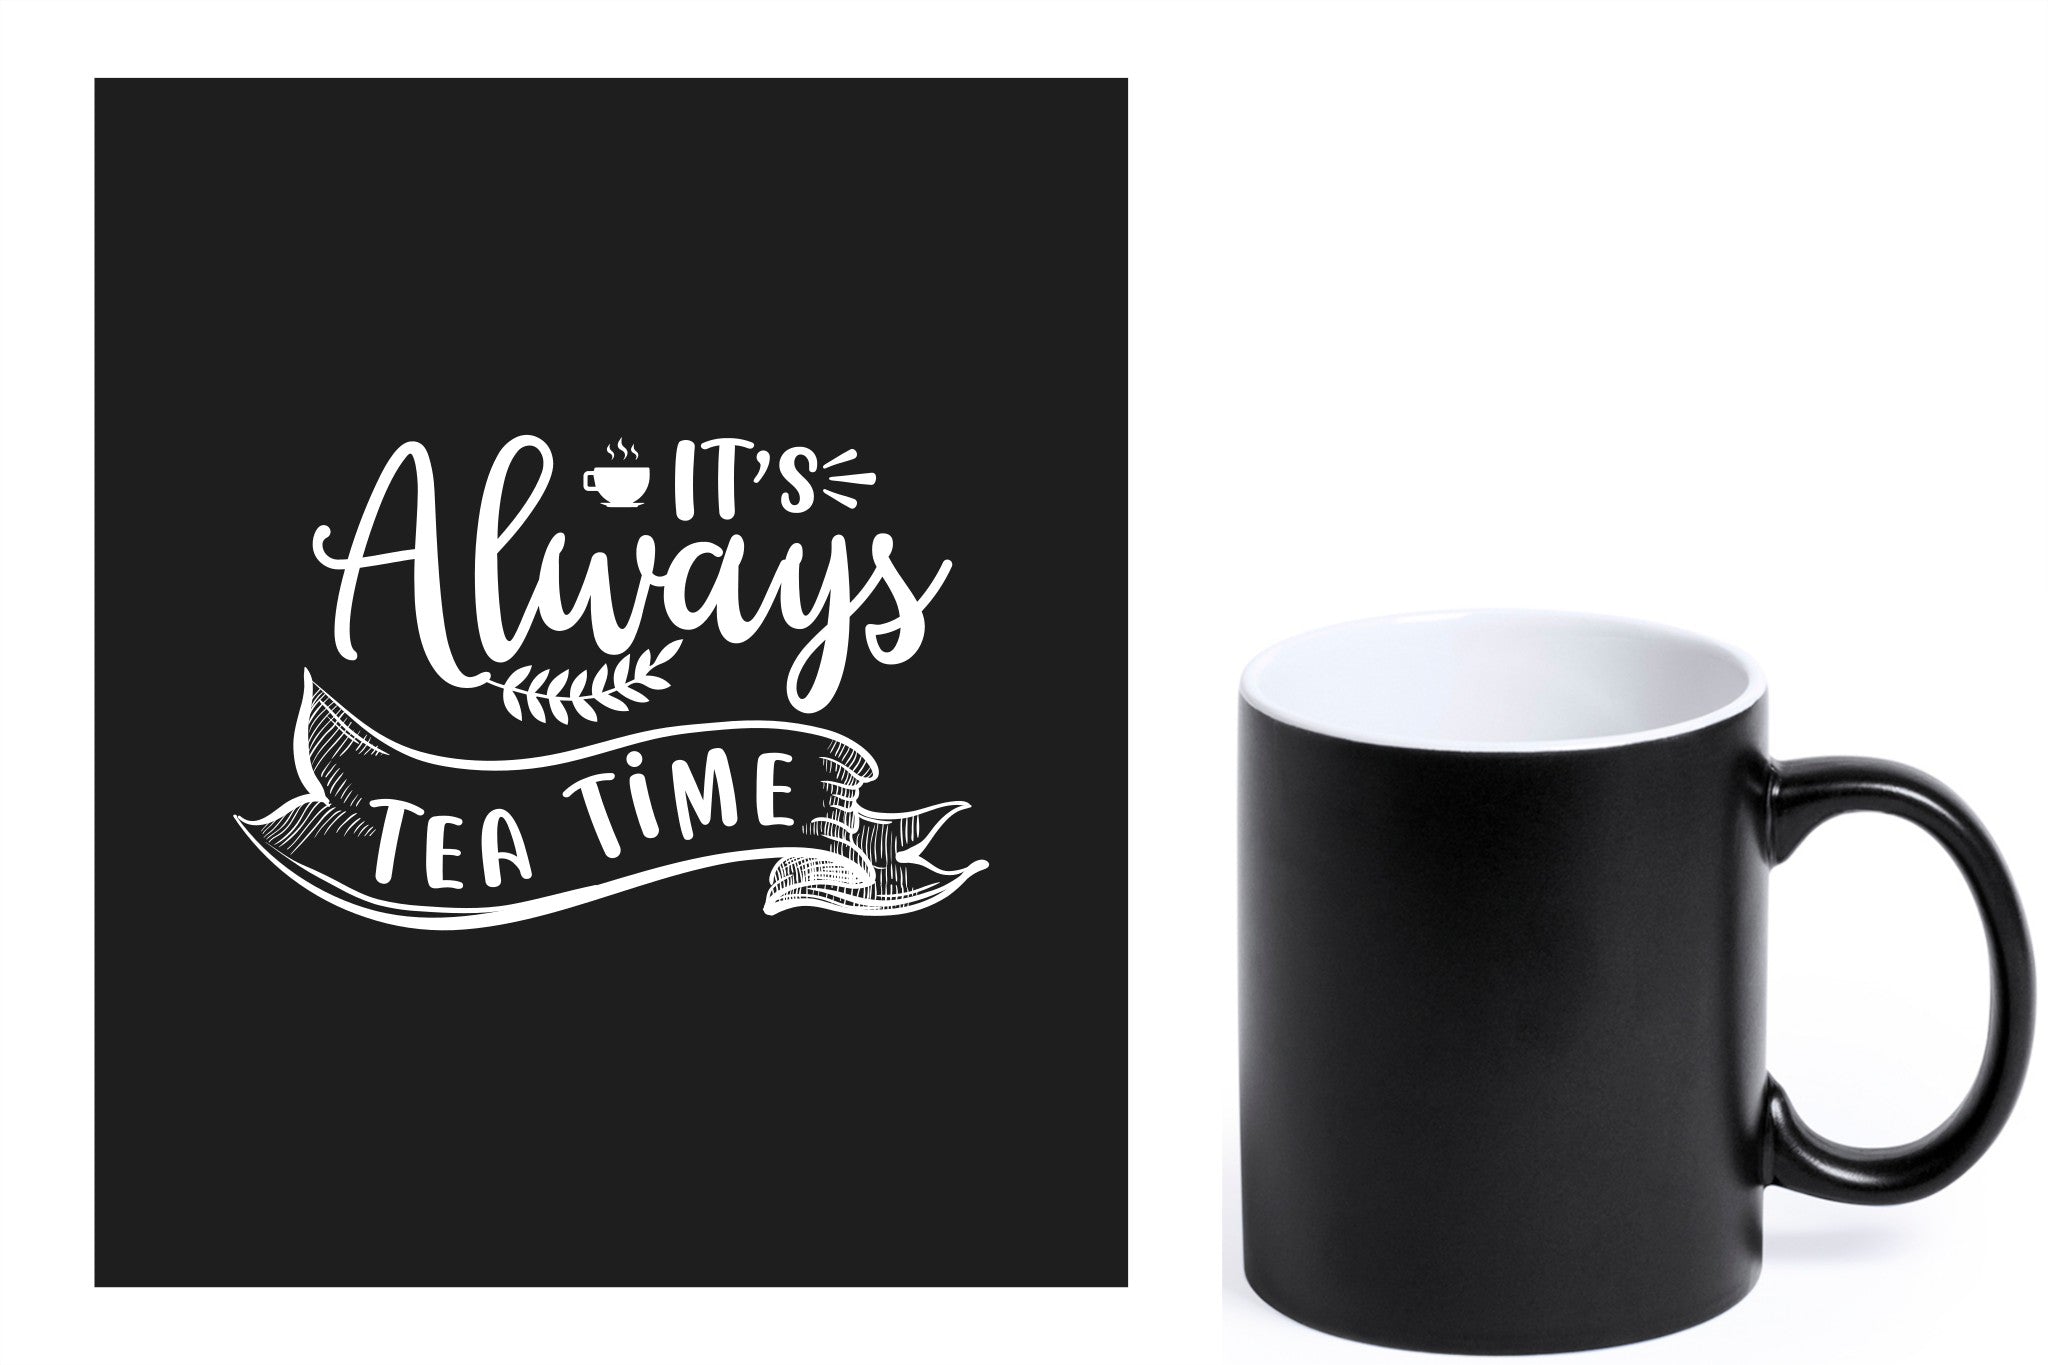 zwarte keramische mok met witte gravure  'It's always tea time'.